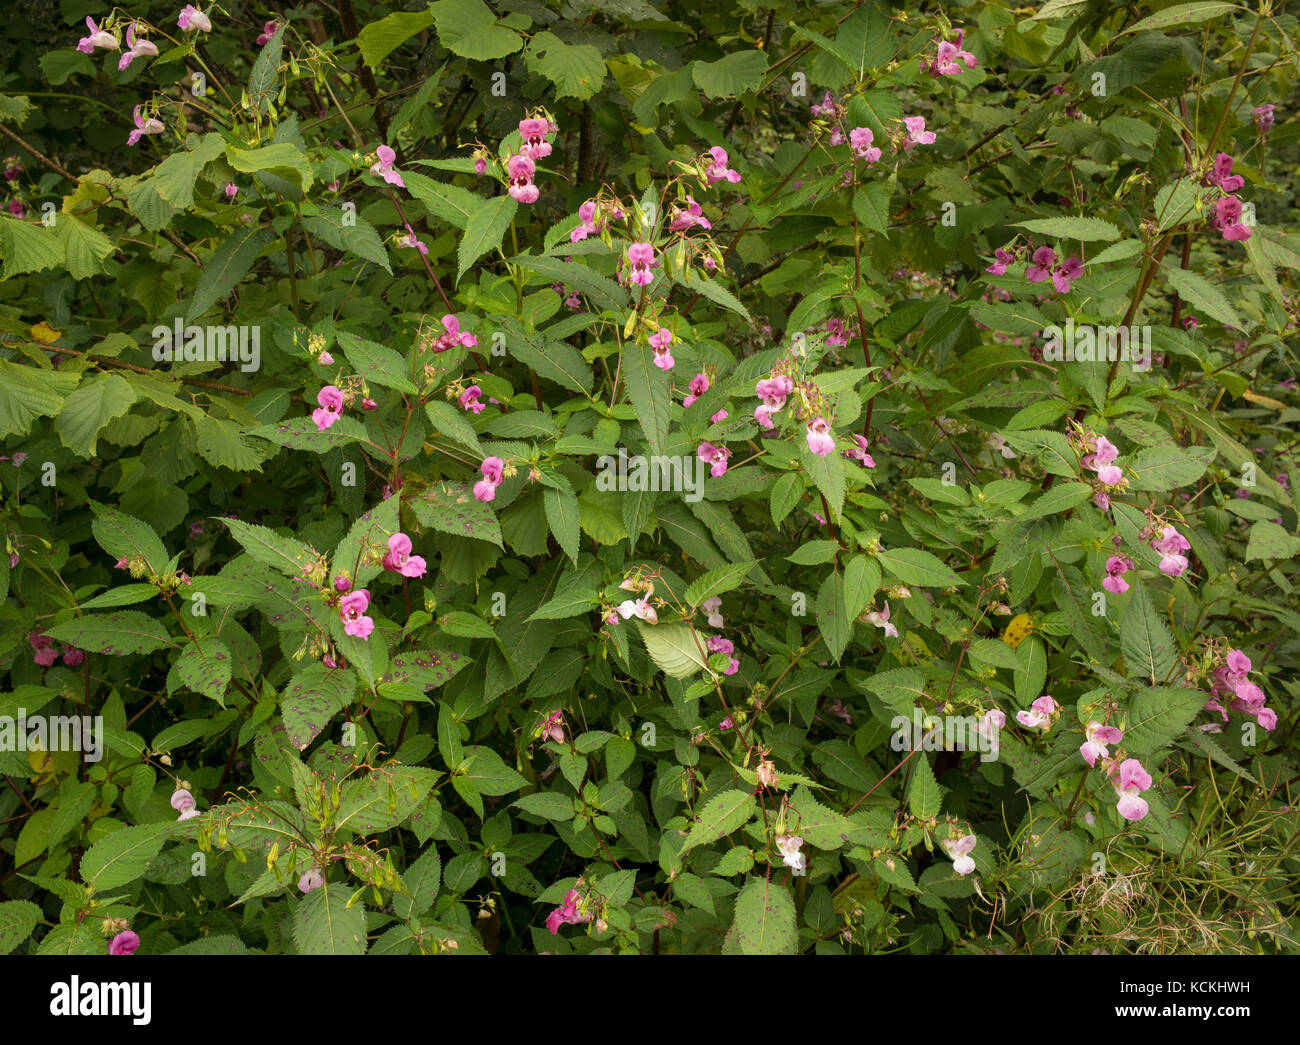 Himalayan Balsam in bloom growing alongside railway line, Carmarthenshire, UK Stock Photo